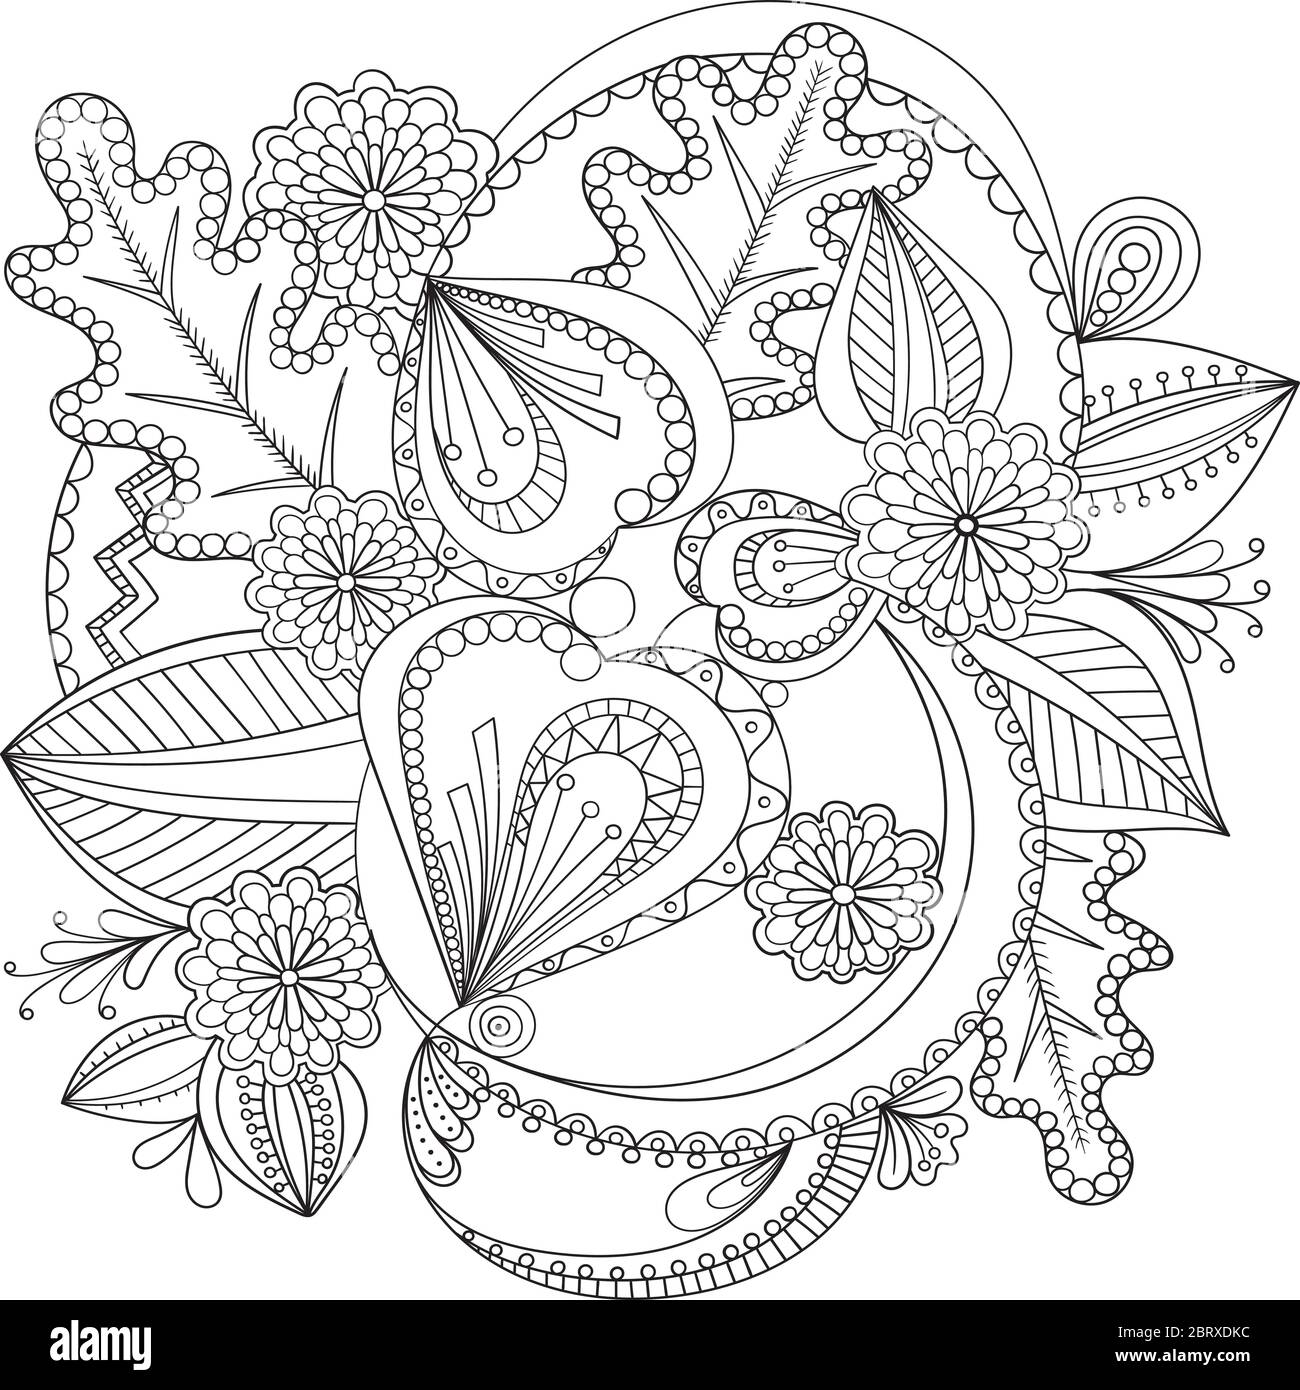 Flores decorativas de fideos en blanco y negro para colorear libro